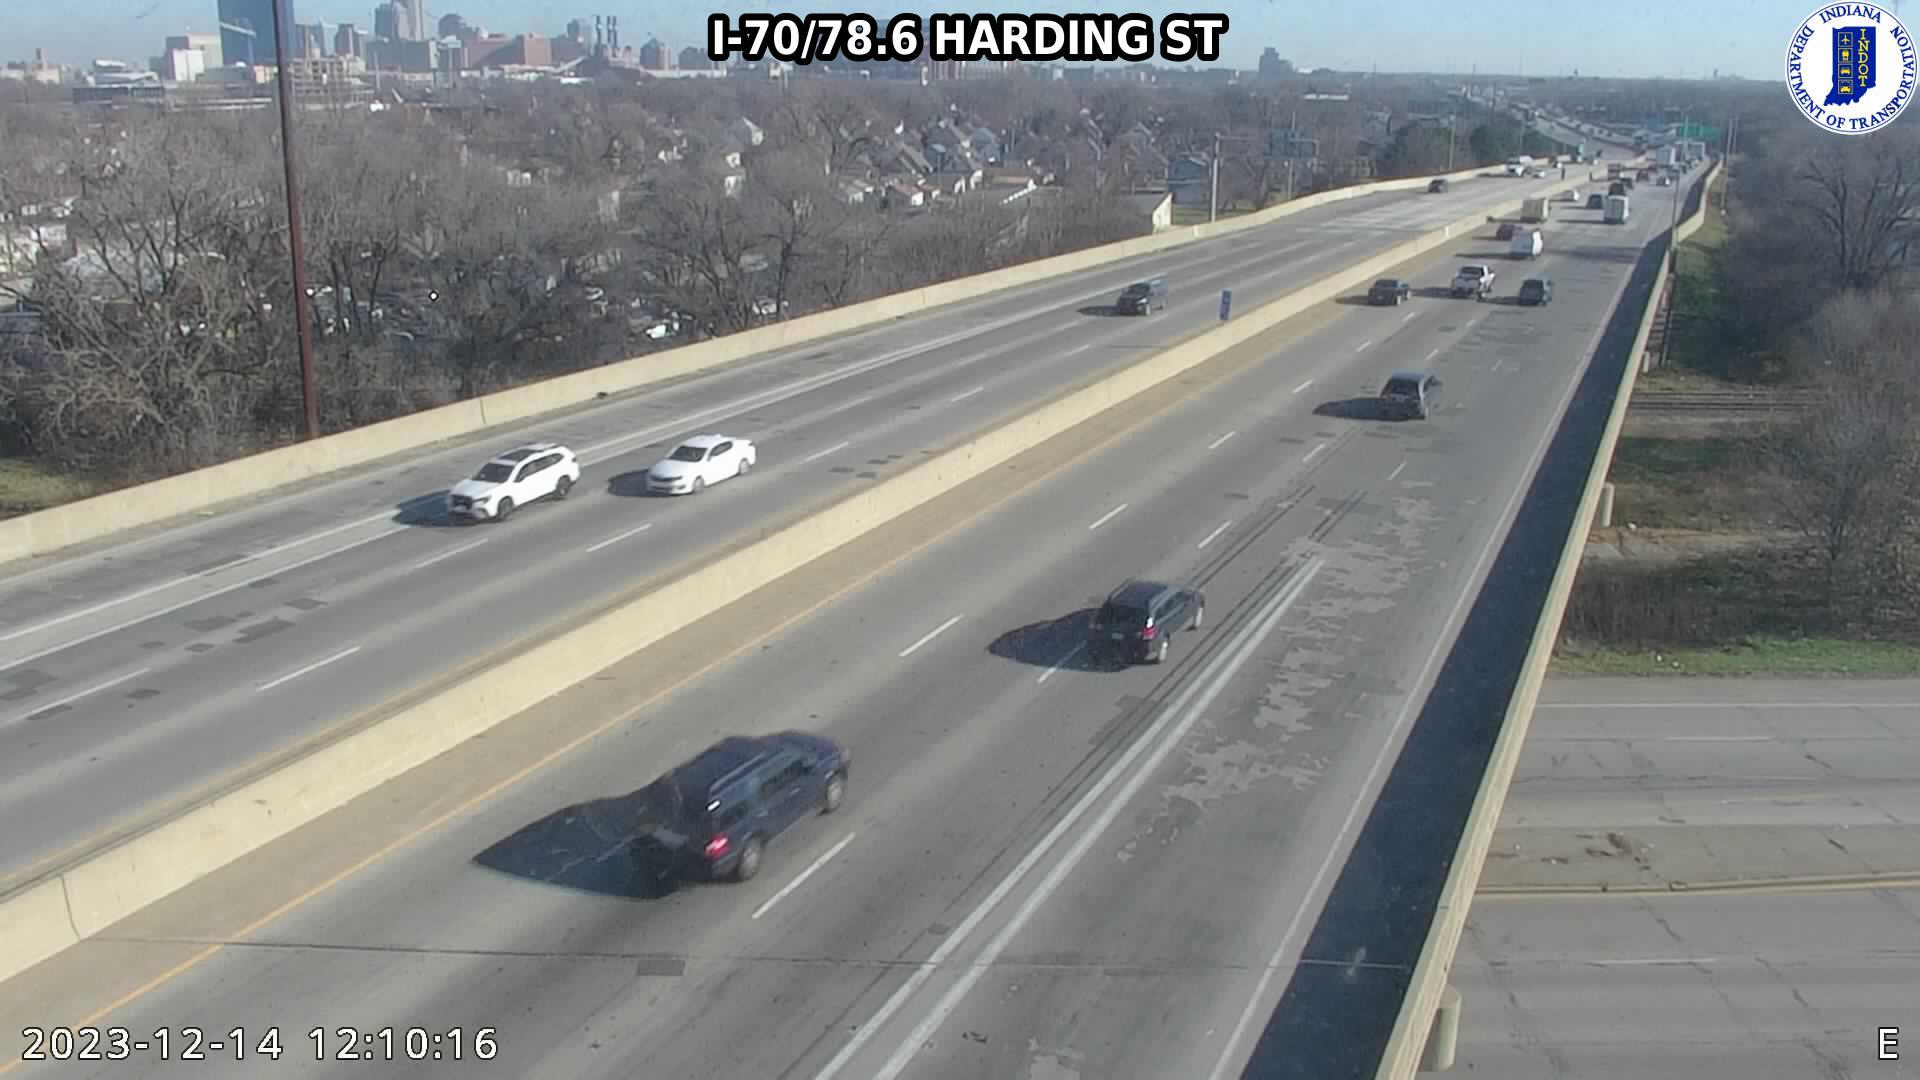 Indianapolis: I-70: I-70/78.6 HARDING ST Traffic Camera